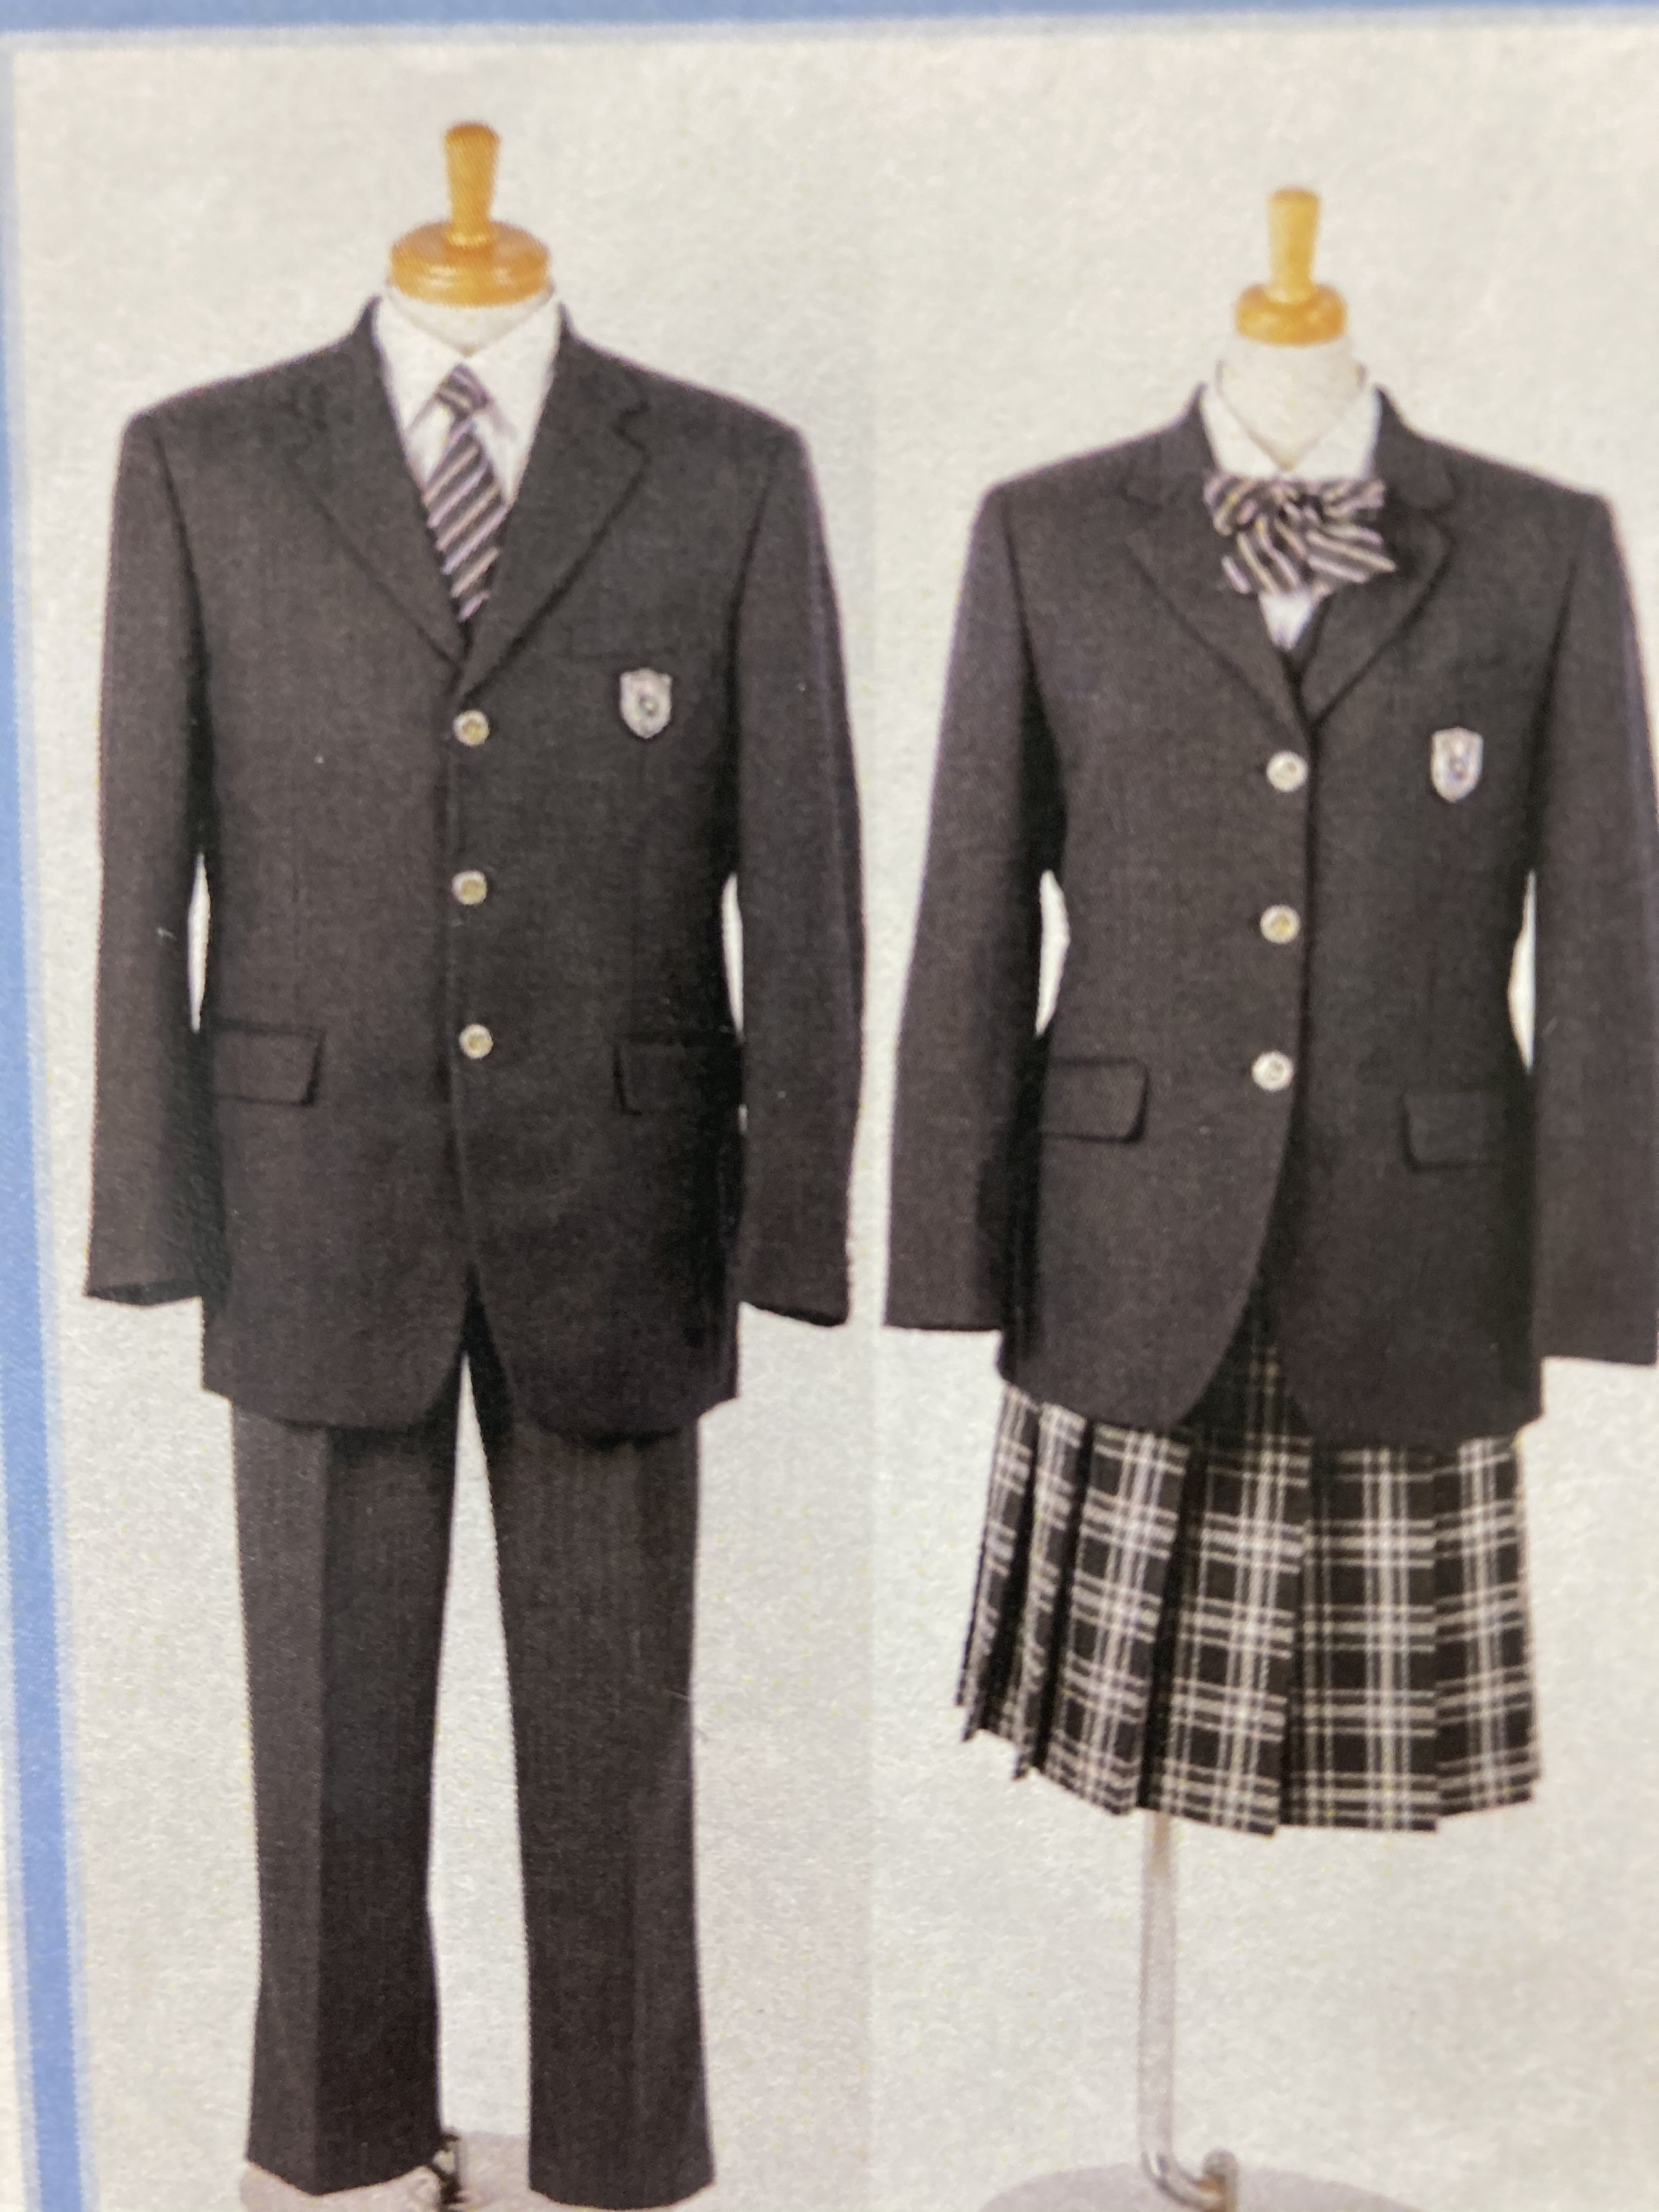 滑川総合高校制服です